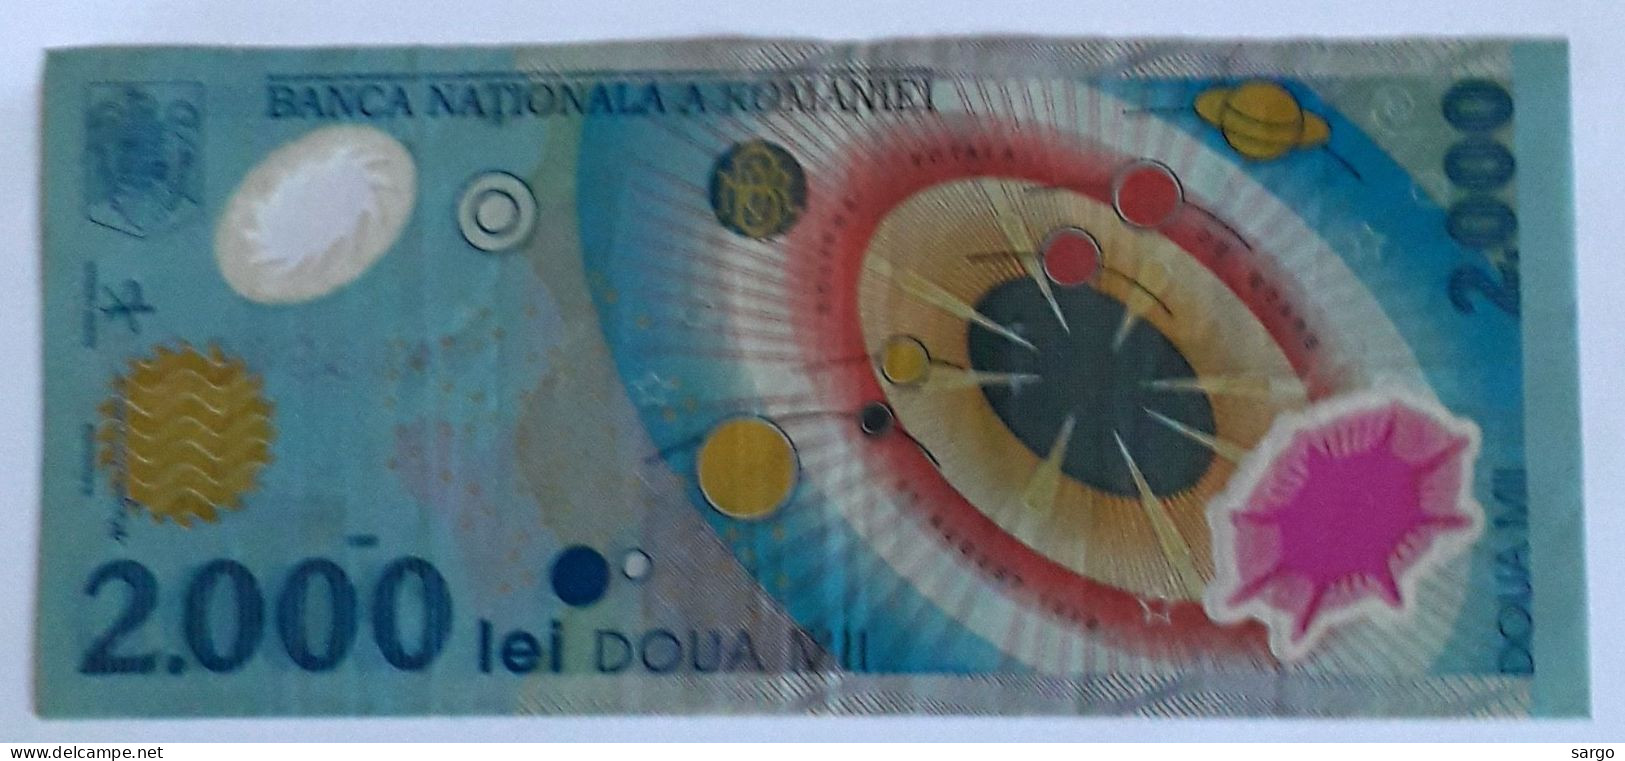 ROMANIA - 2000 LEI  - 1999 - CIRC - P 111- POLYMER - BANKNOTES - PAPER MONEY - CARTAMONETA - - Roumanie